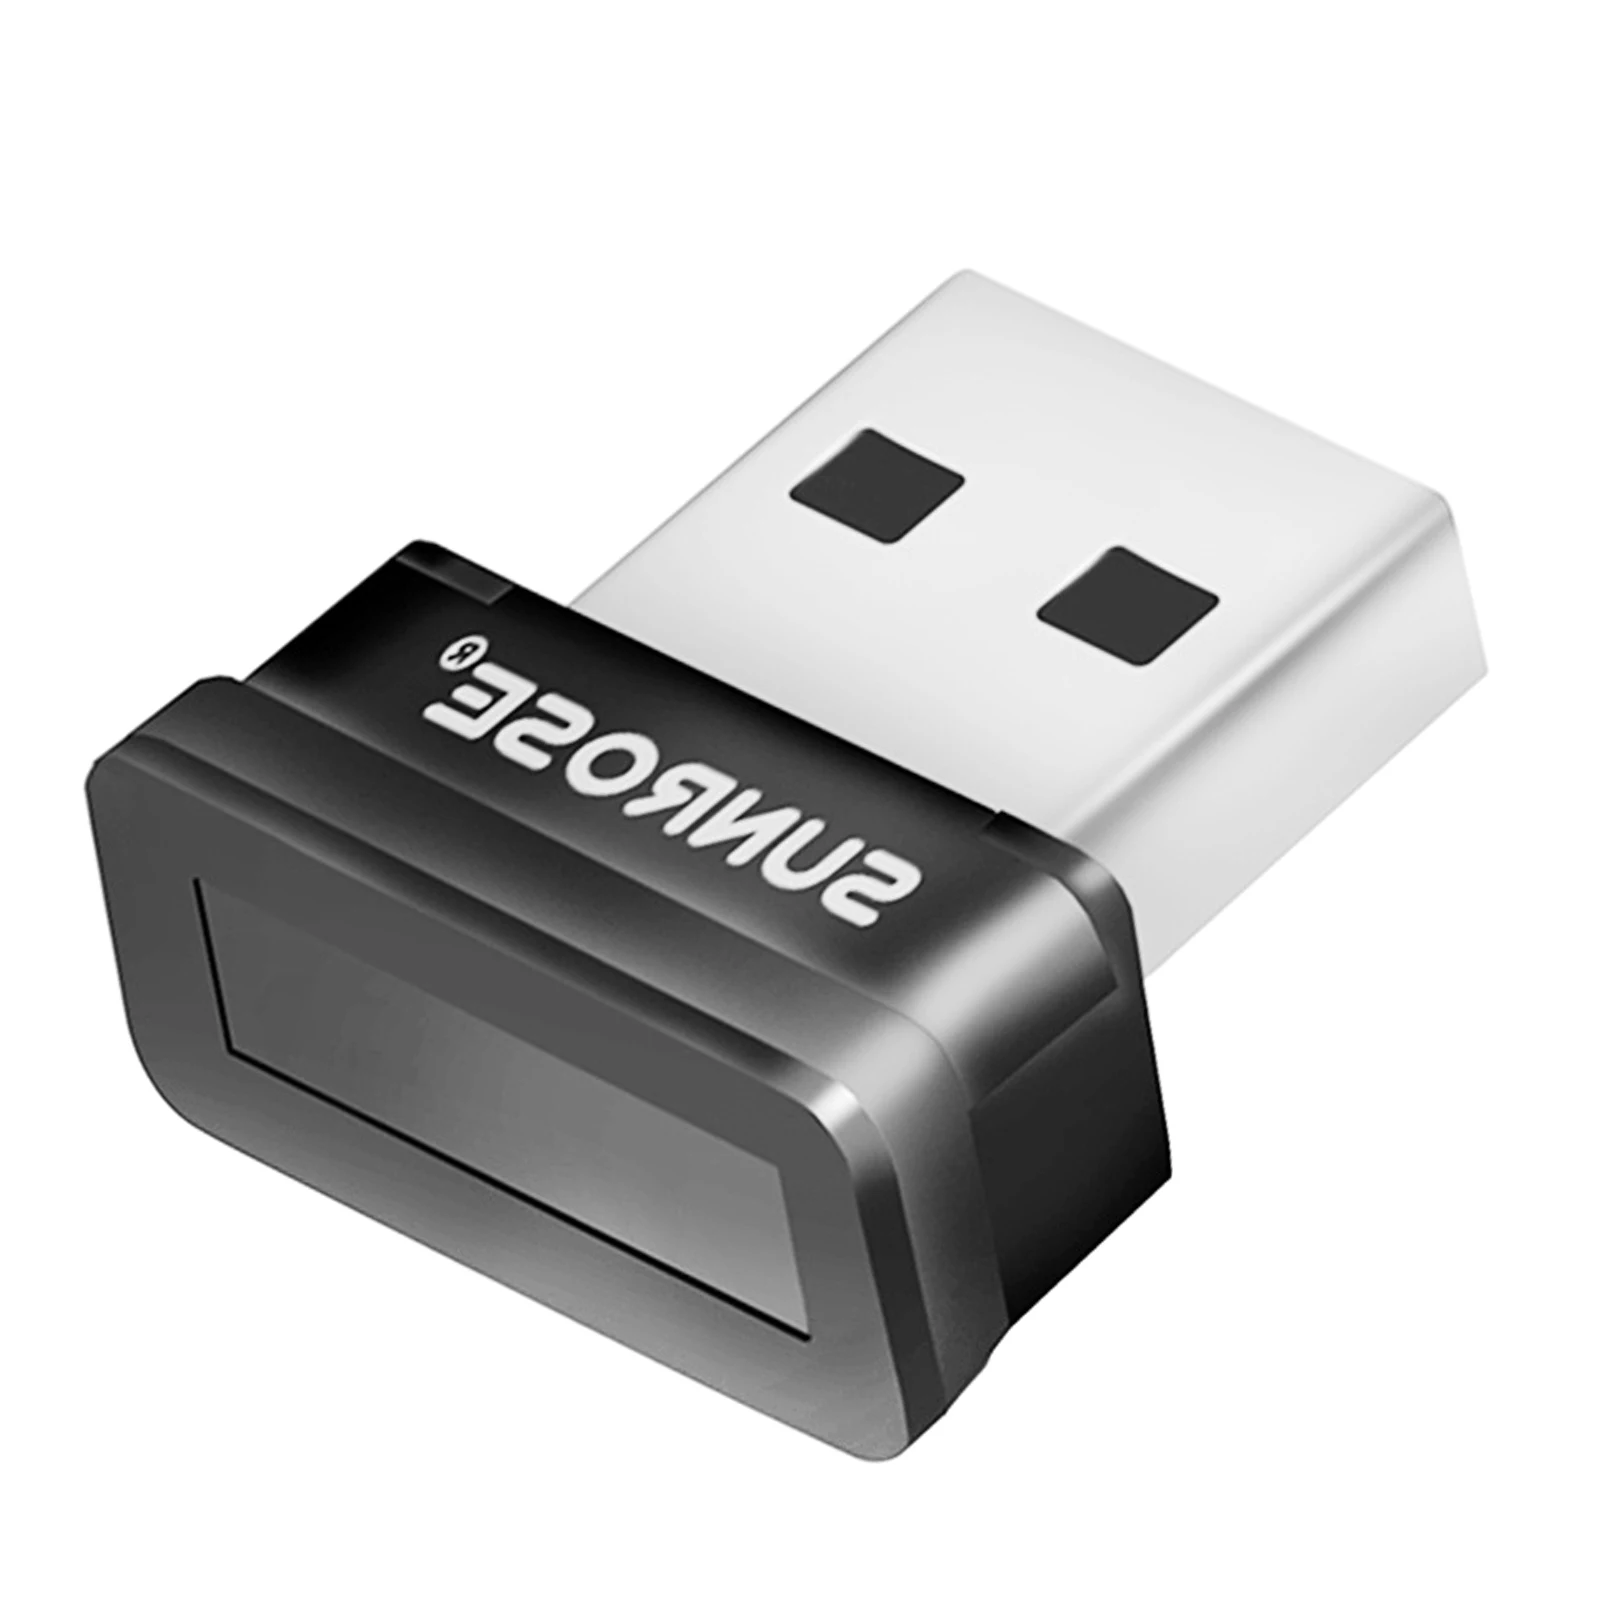 

USB-устройство для считывания отпечатков пальцев, вход в систему, блокировка, пароль, быстрое совпадение